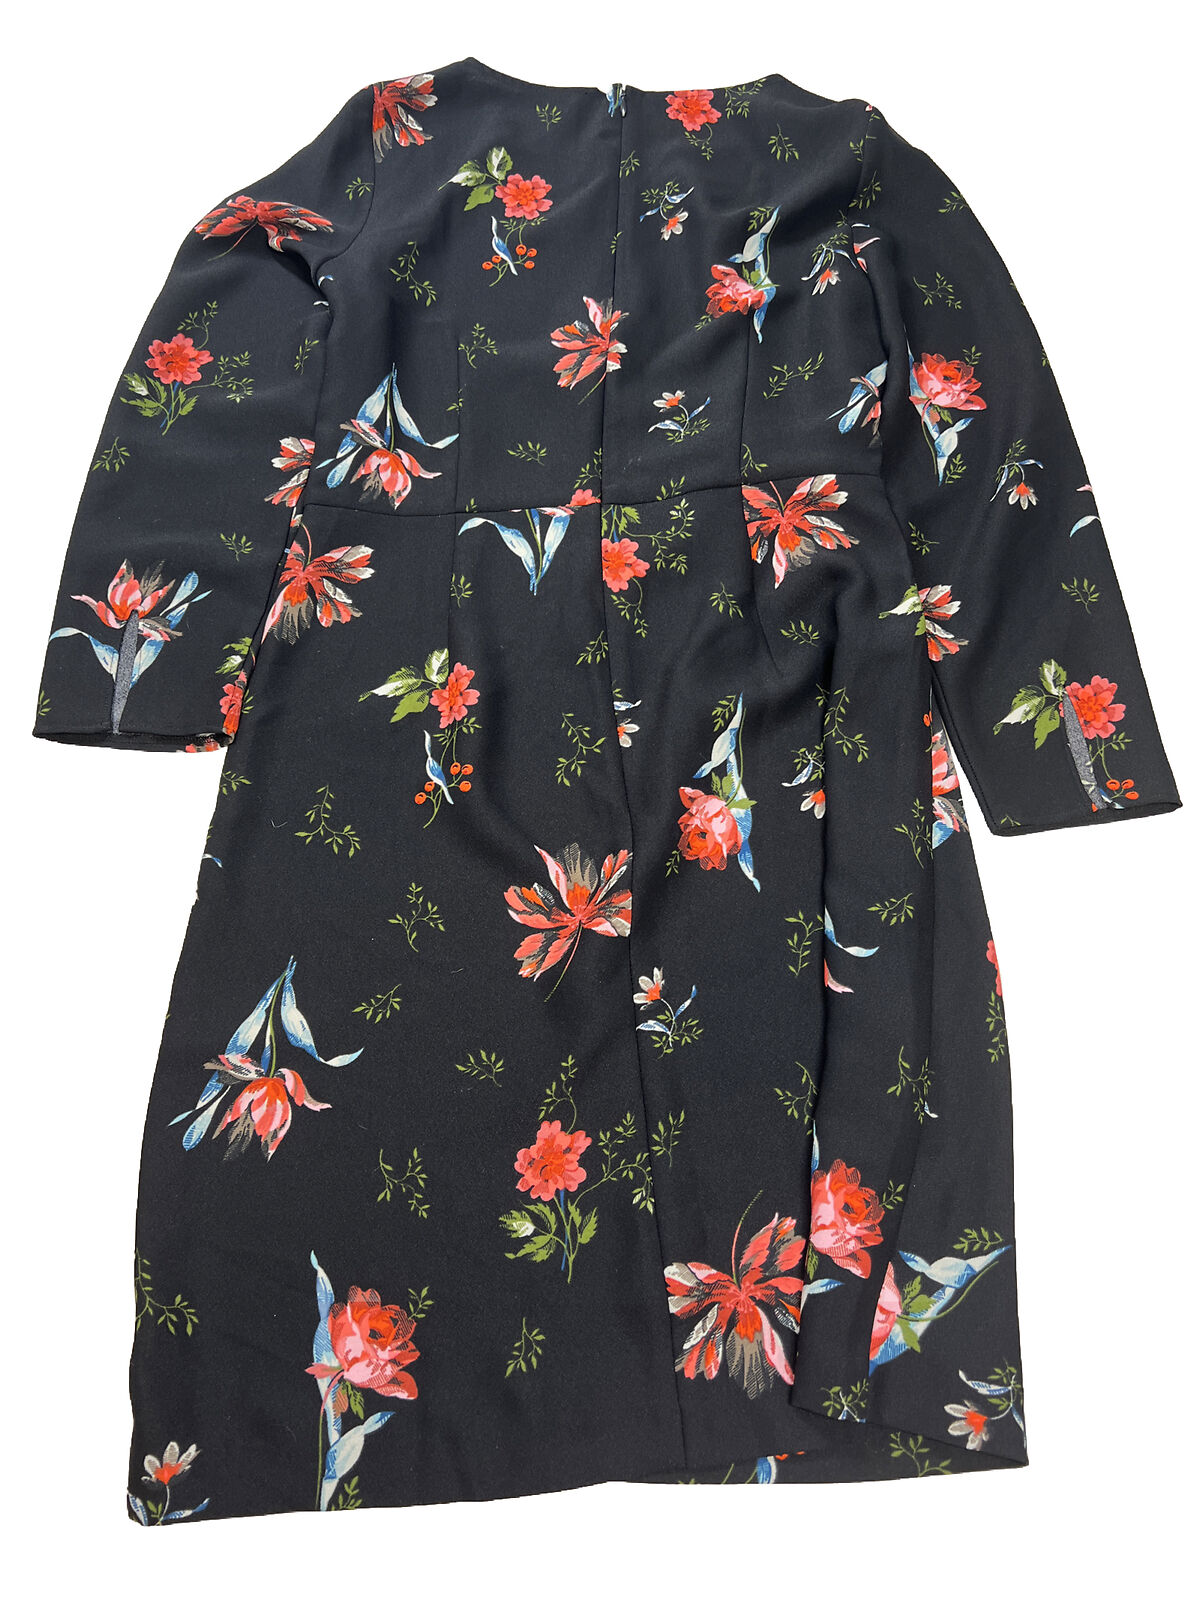 Ann Taylor Women's Black Floral Faux Wrap Shift Dress - 8